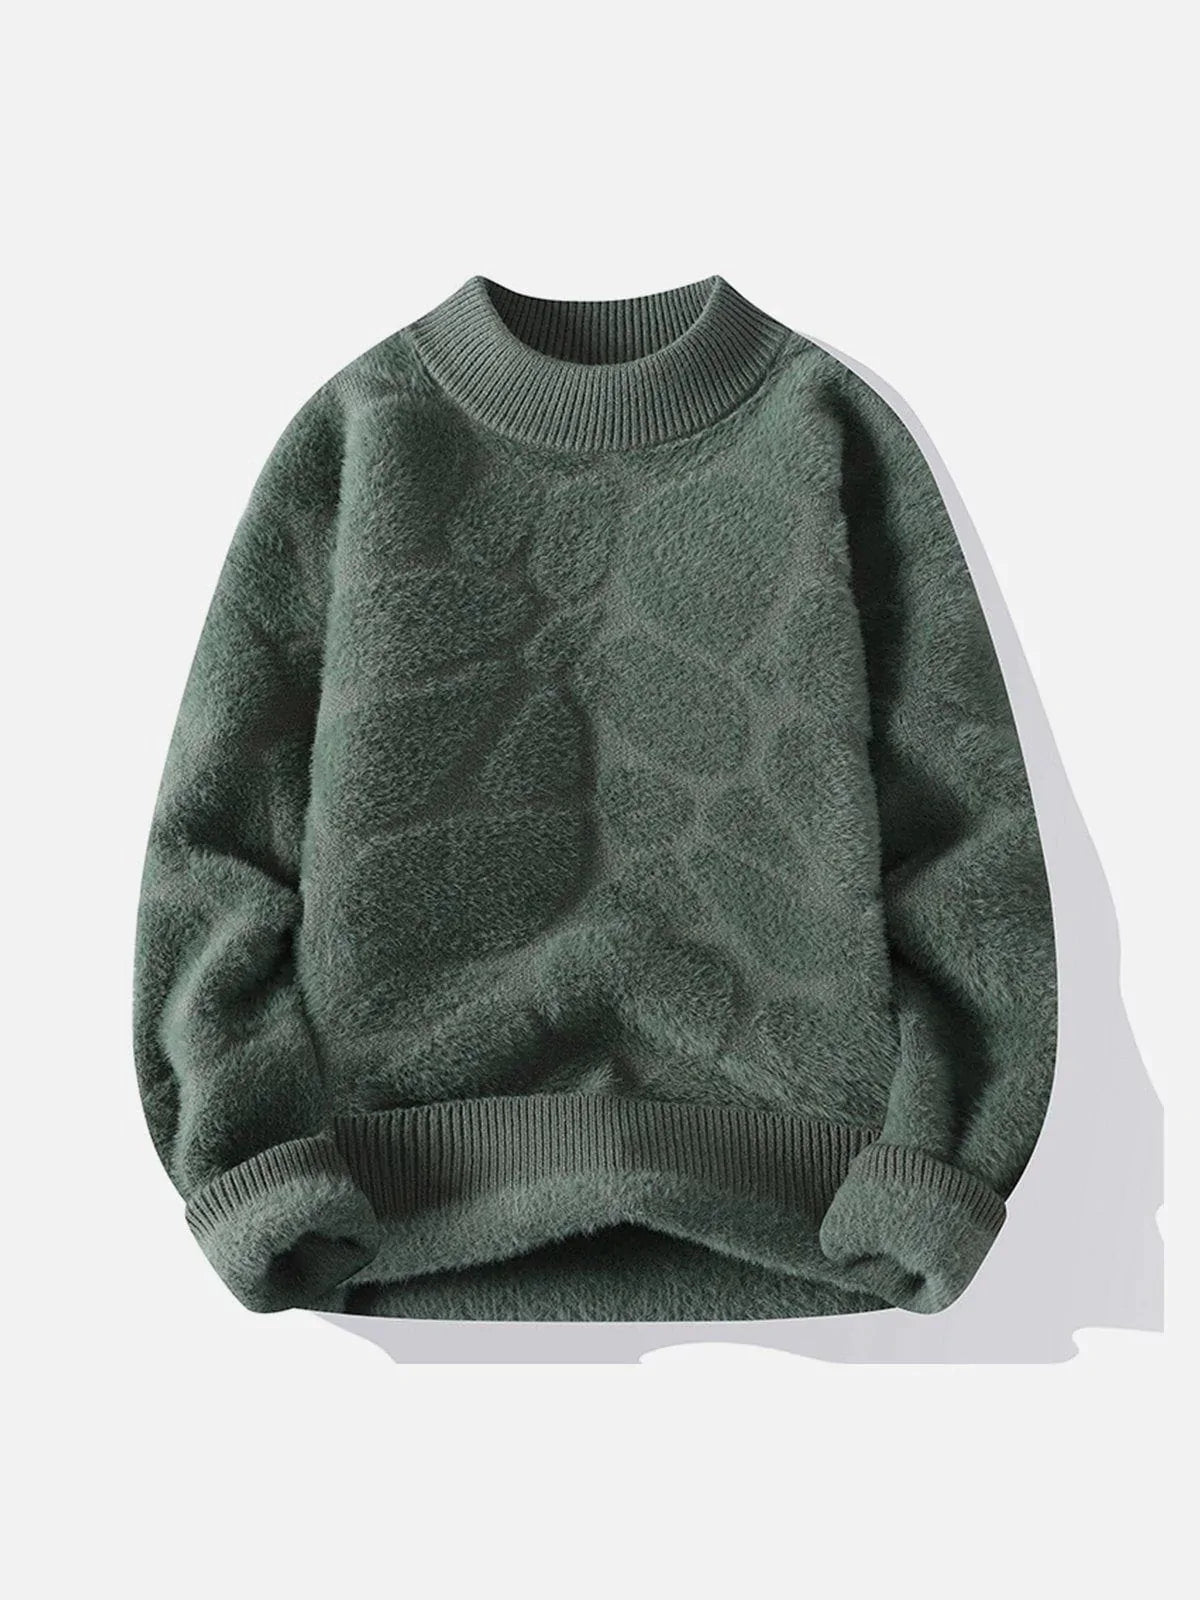 Majesda® - Mink Fleece Solid Warm Sweater outfit ideas streetwear fashion